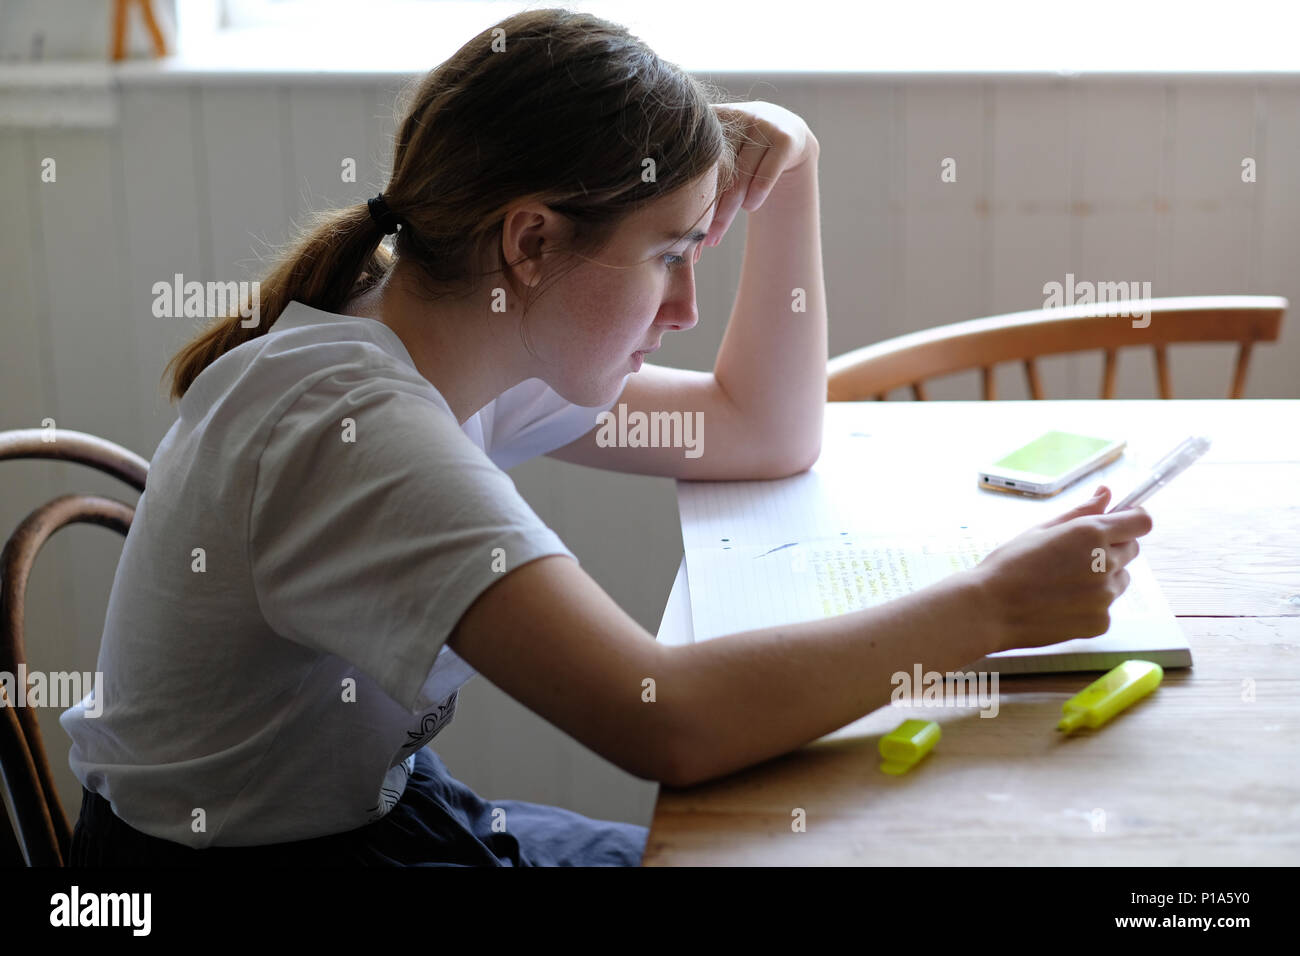 Une jeune fille âgée de 18 ans de l'étude d'un niveaux sur la table de cuisine Banque D'Images